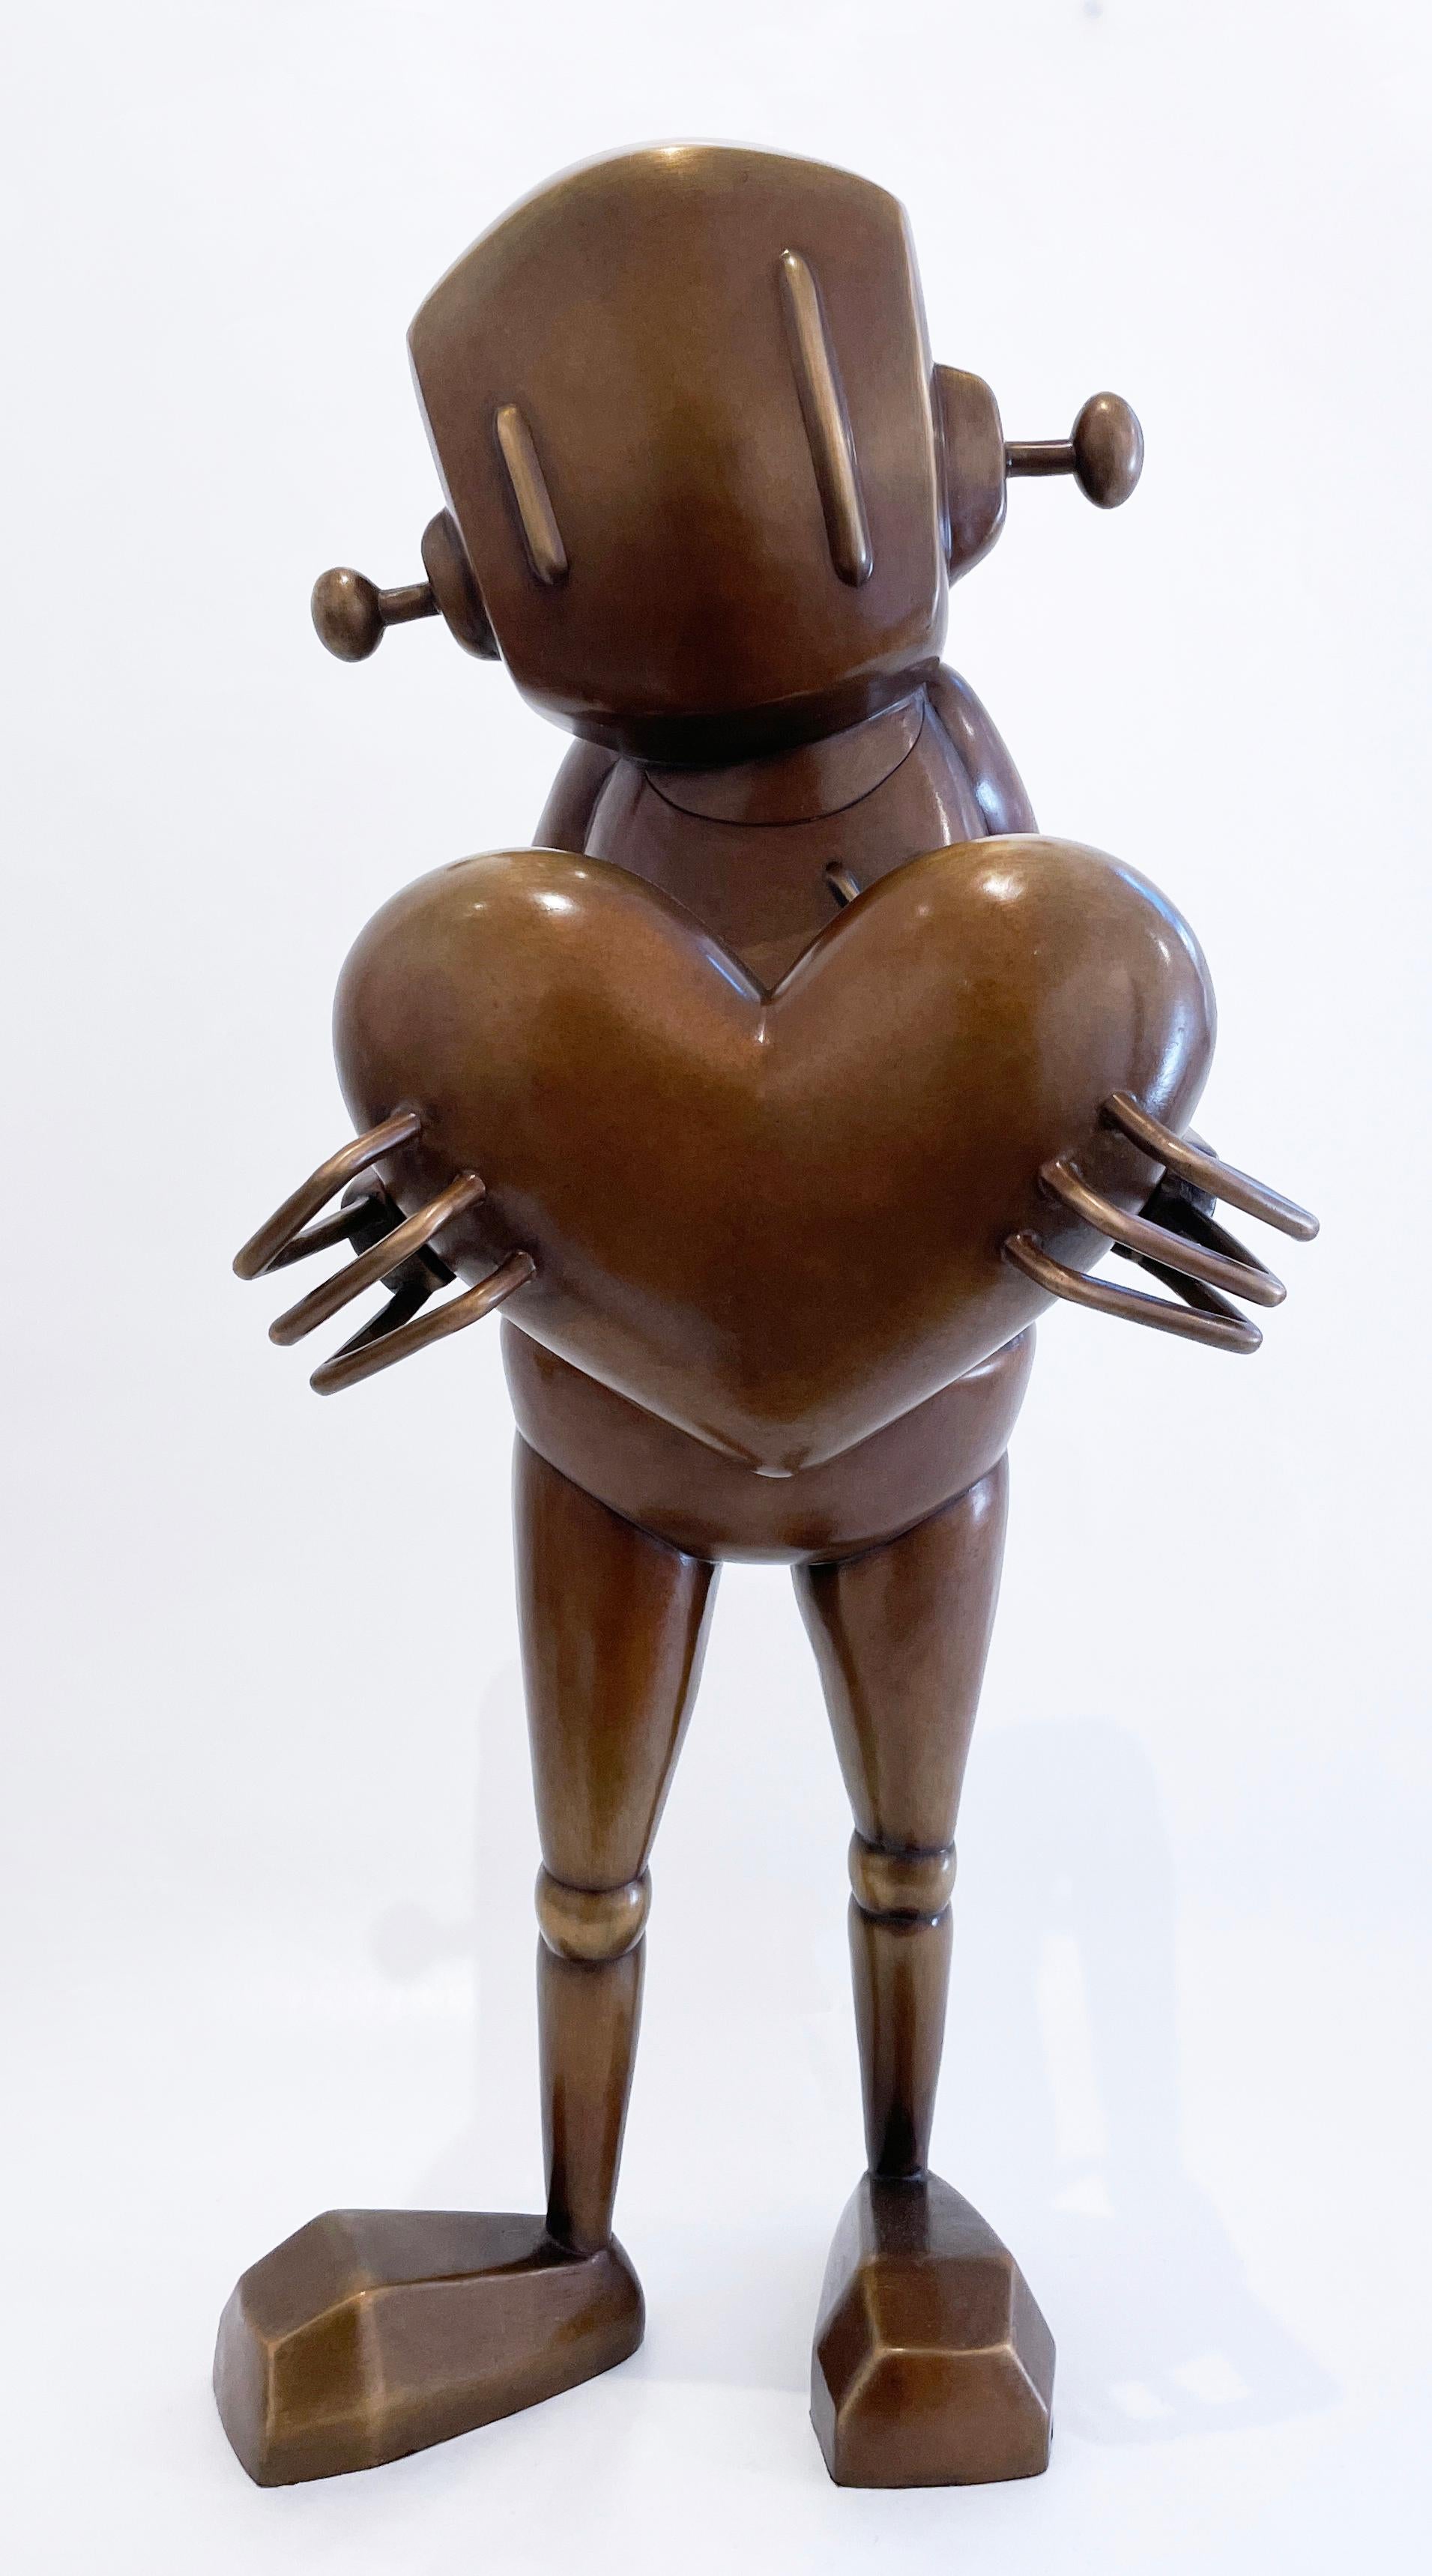 Pour Giving de Chris RWK, sculpture en bronze, personnage robot d'art urbain avec cœur